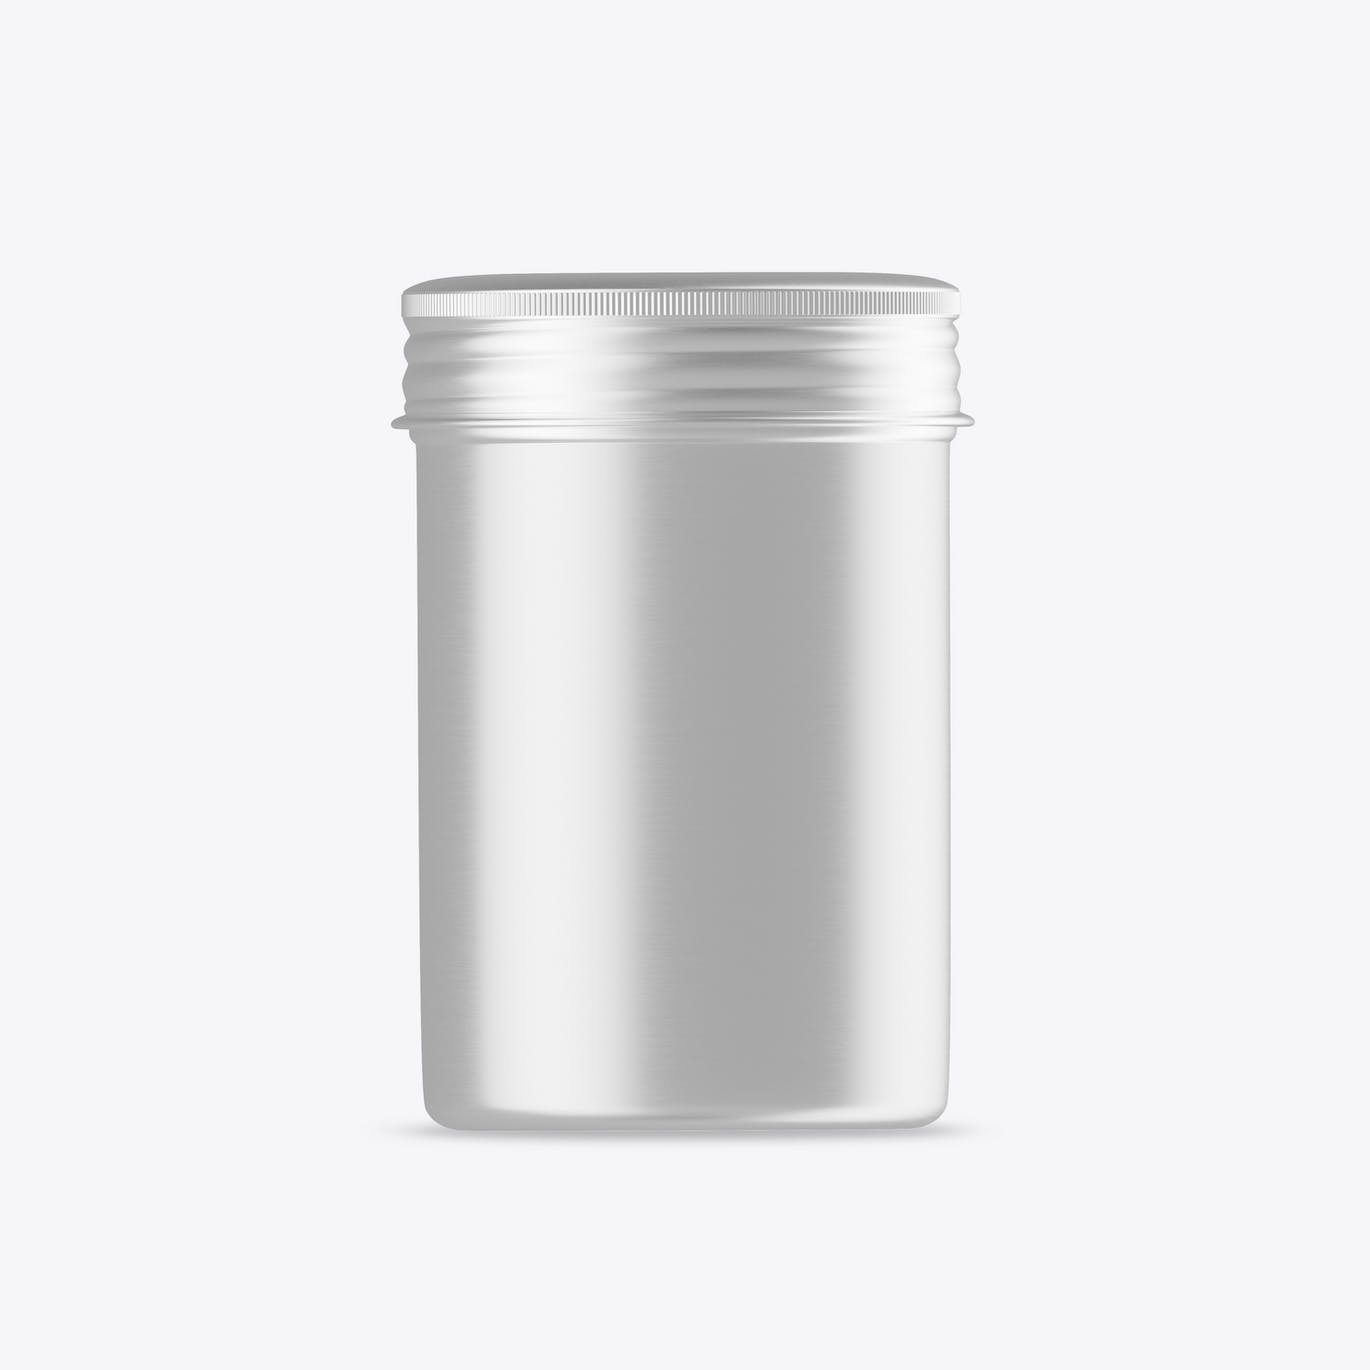 茶叶罐锡罐包装设计样机 Colored Tin Mockup 样机素材 第2张